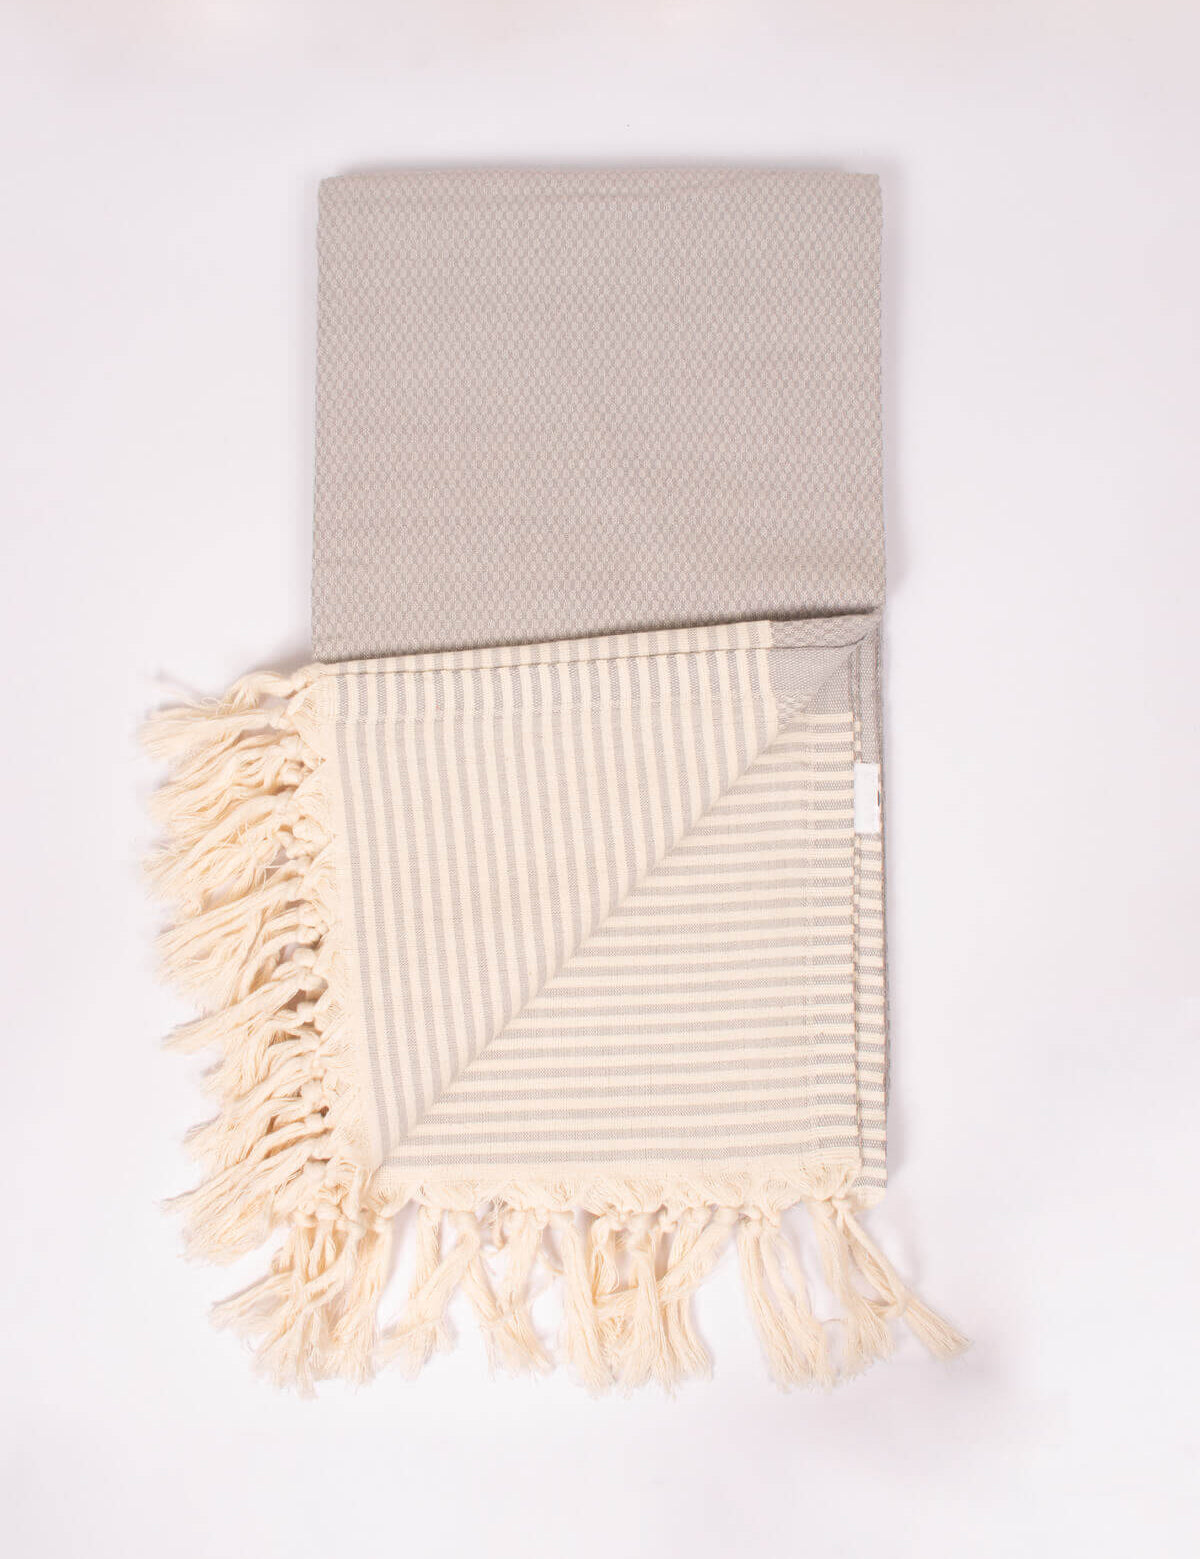 Pearl-Grey-Amalfi-Hammam-Towel-BohemiaDesign-02.jpg